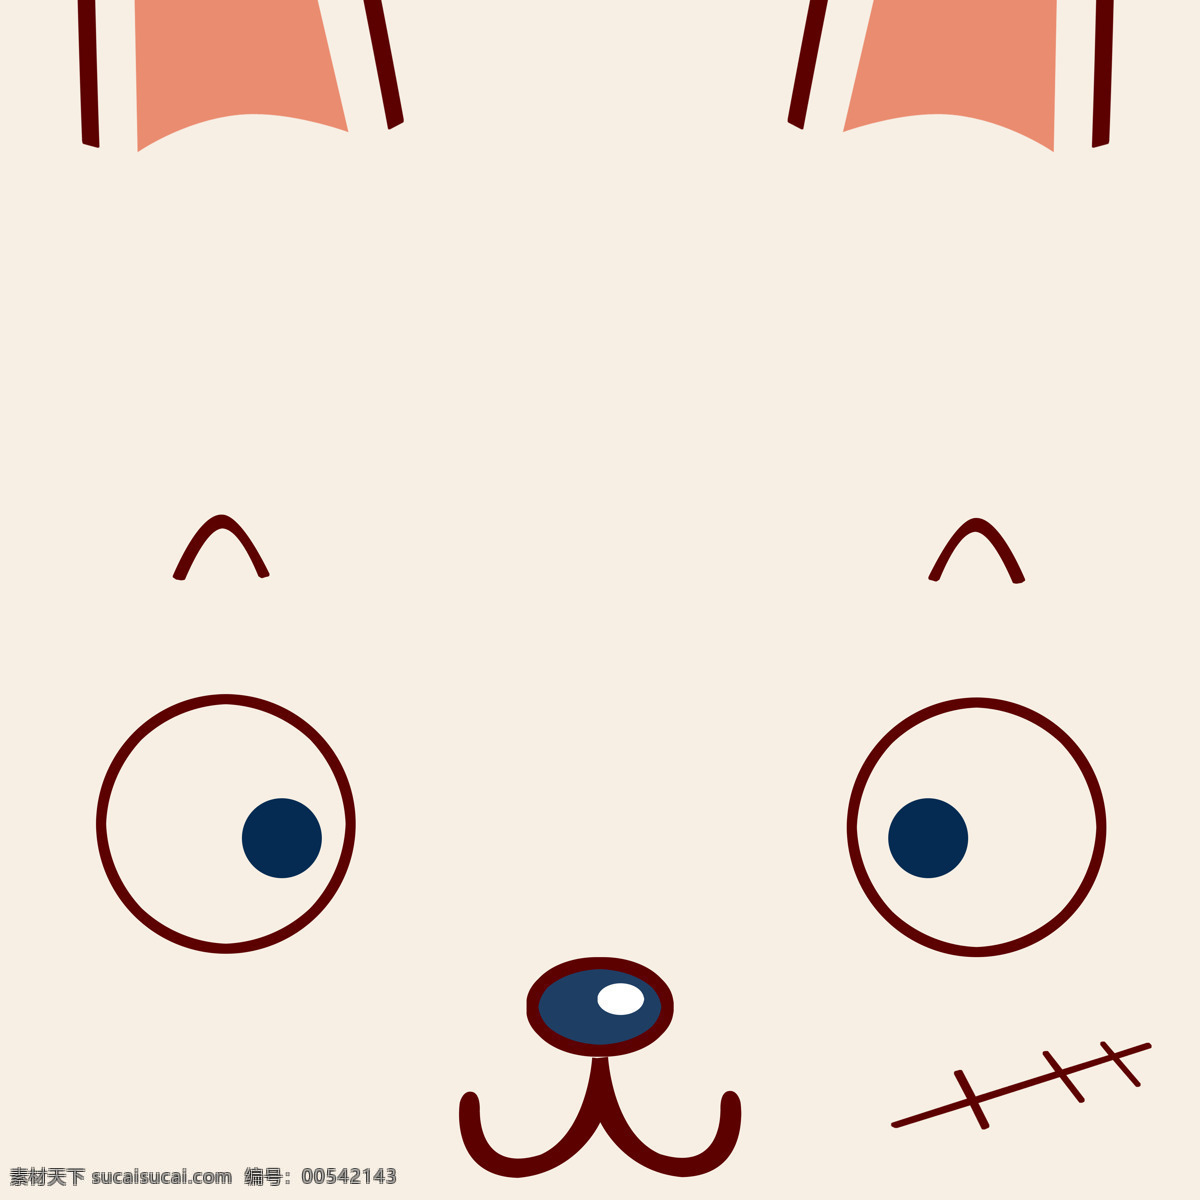 阿狸 白色 动漫动画 动漫人物 头像 眼睛 卡通 设计素材 模板下载 ali头像 米兔 矢量图 日常生活